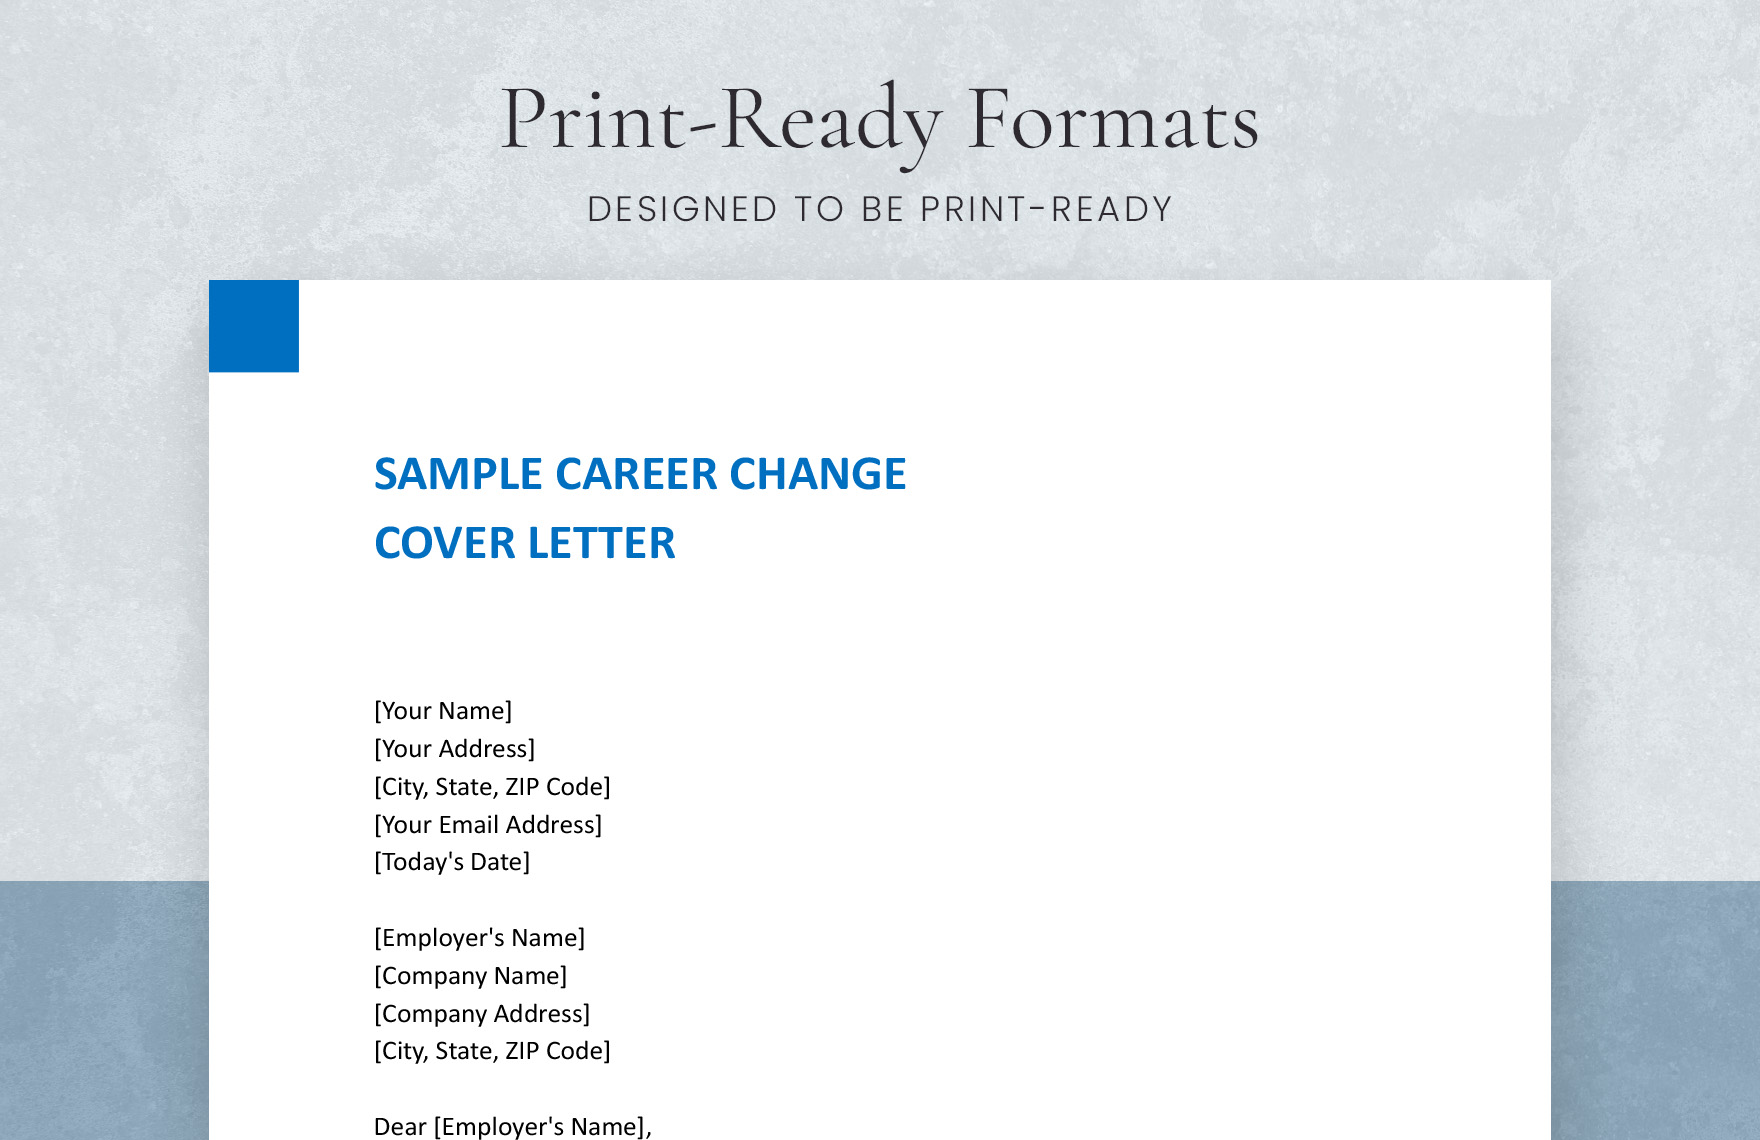 Sample Career Change Cover letter